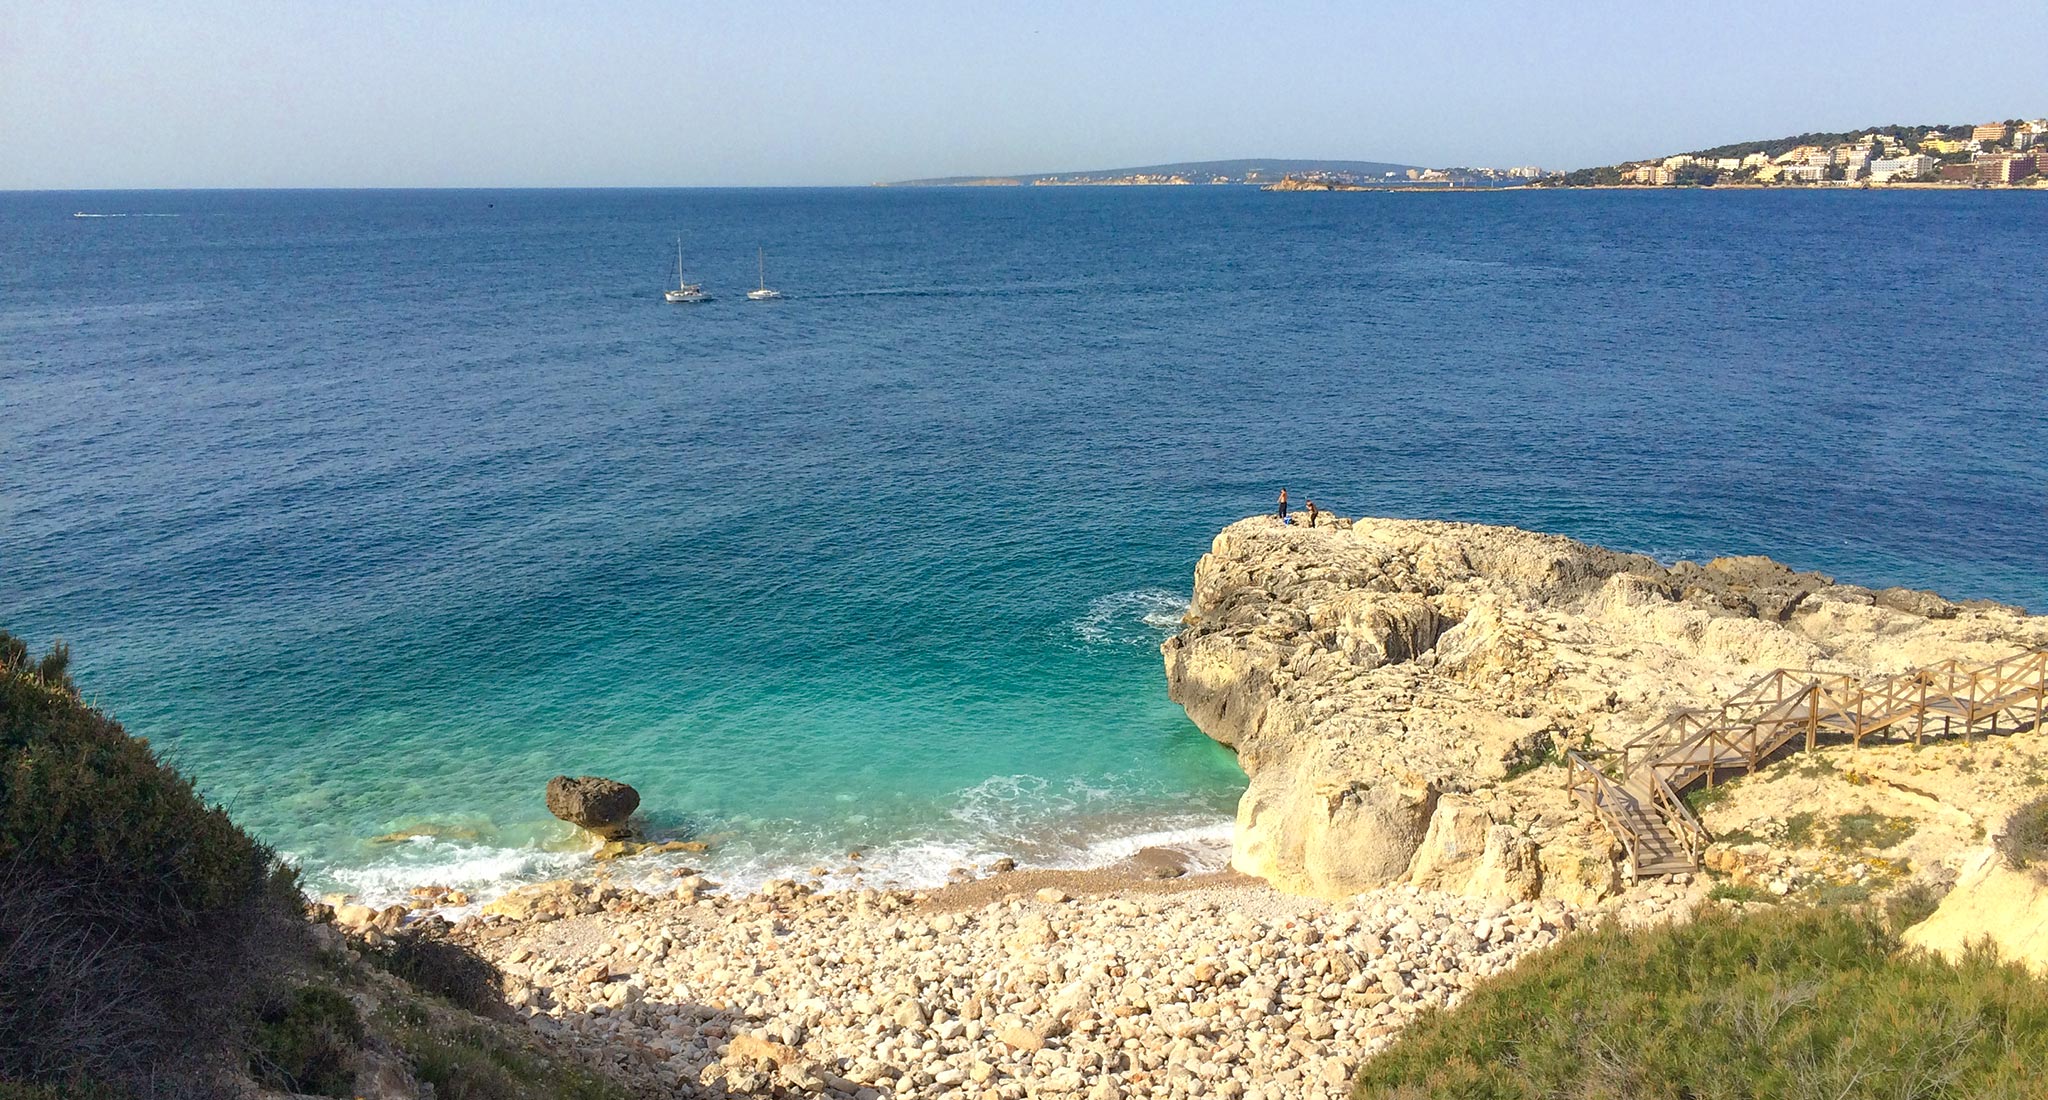 Dive into Mallorca's waters